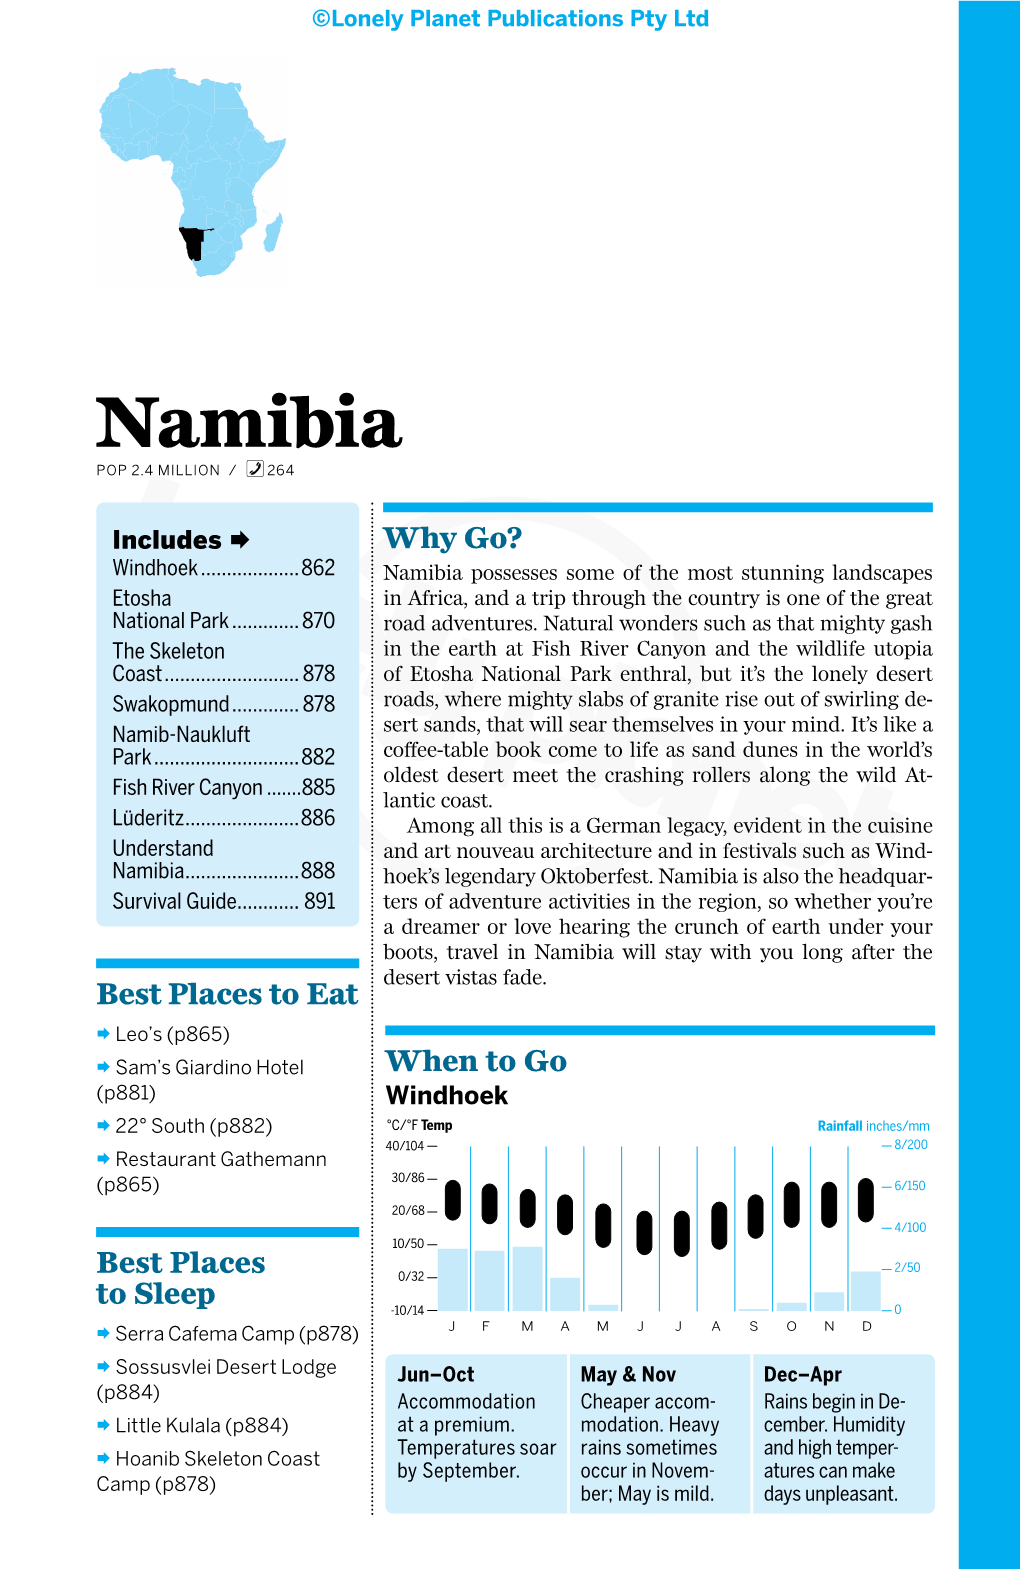 Namibia% POP 2.4 MILLION / 264